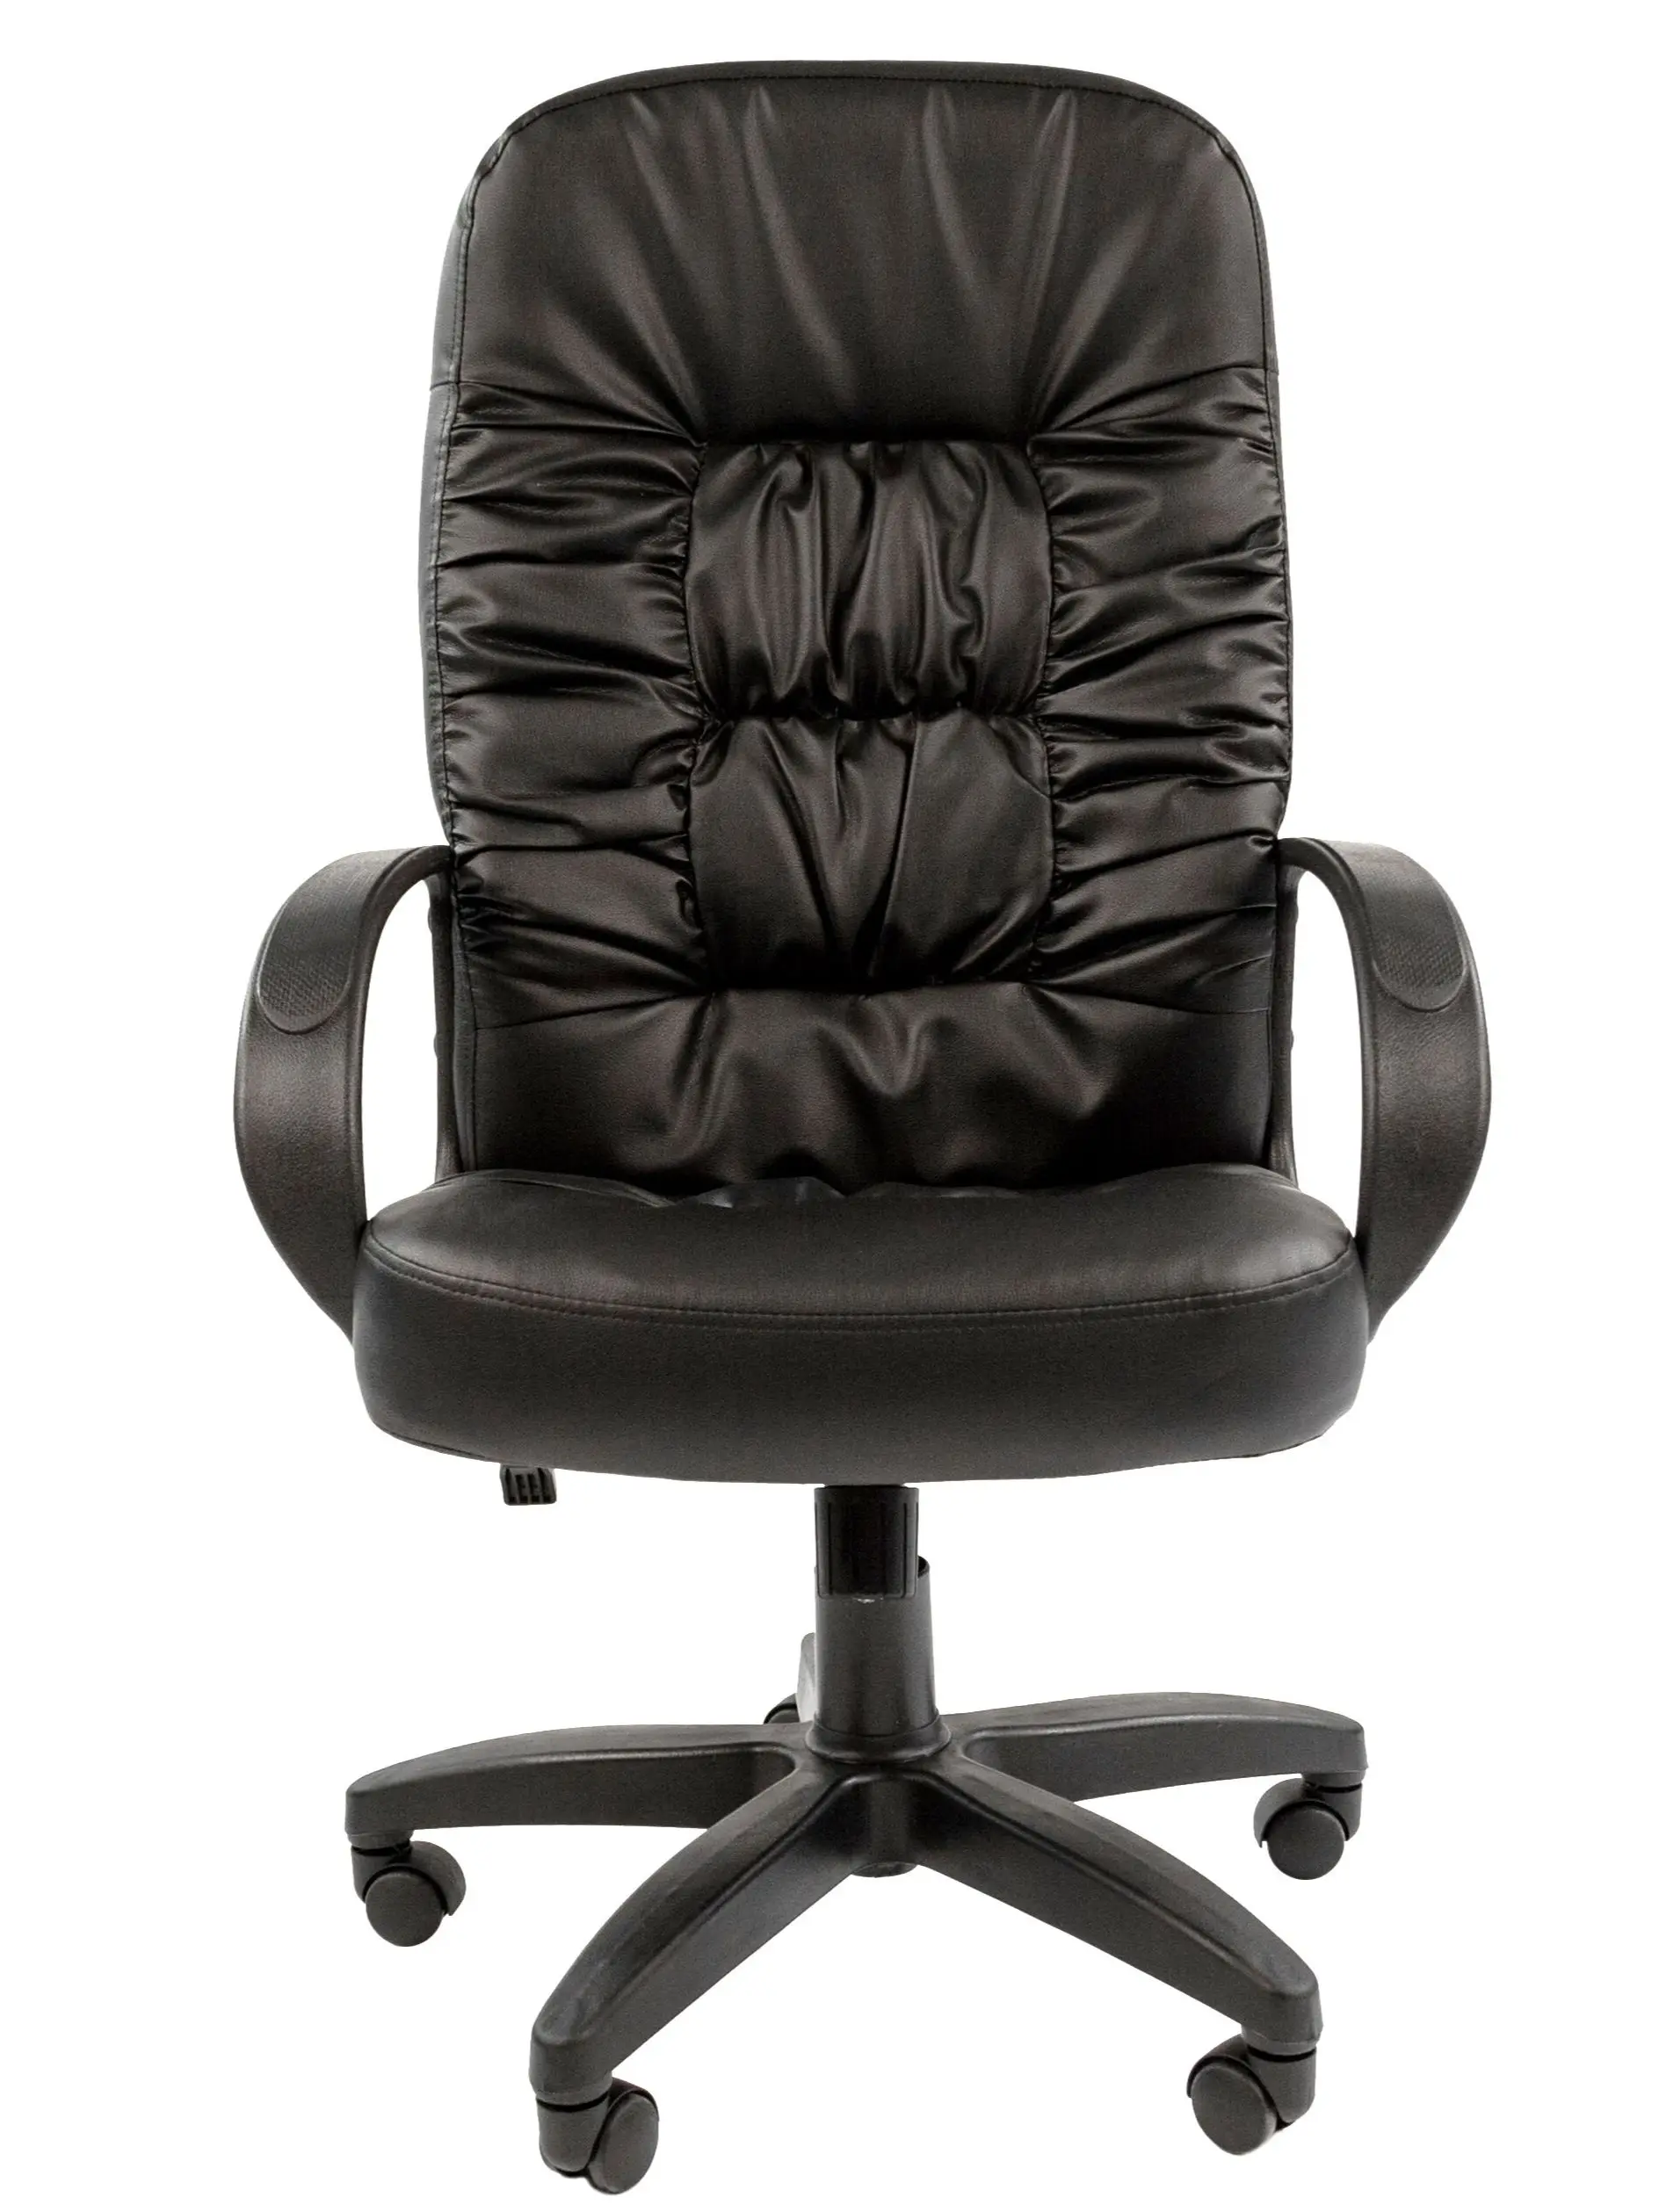 кресло для руководителя Chairman 416 в экокоже с низкой спинкой дома офиса - купить по